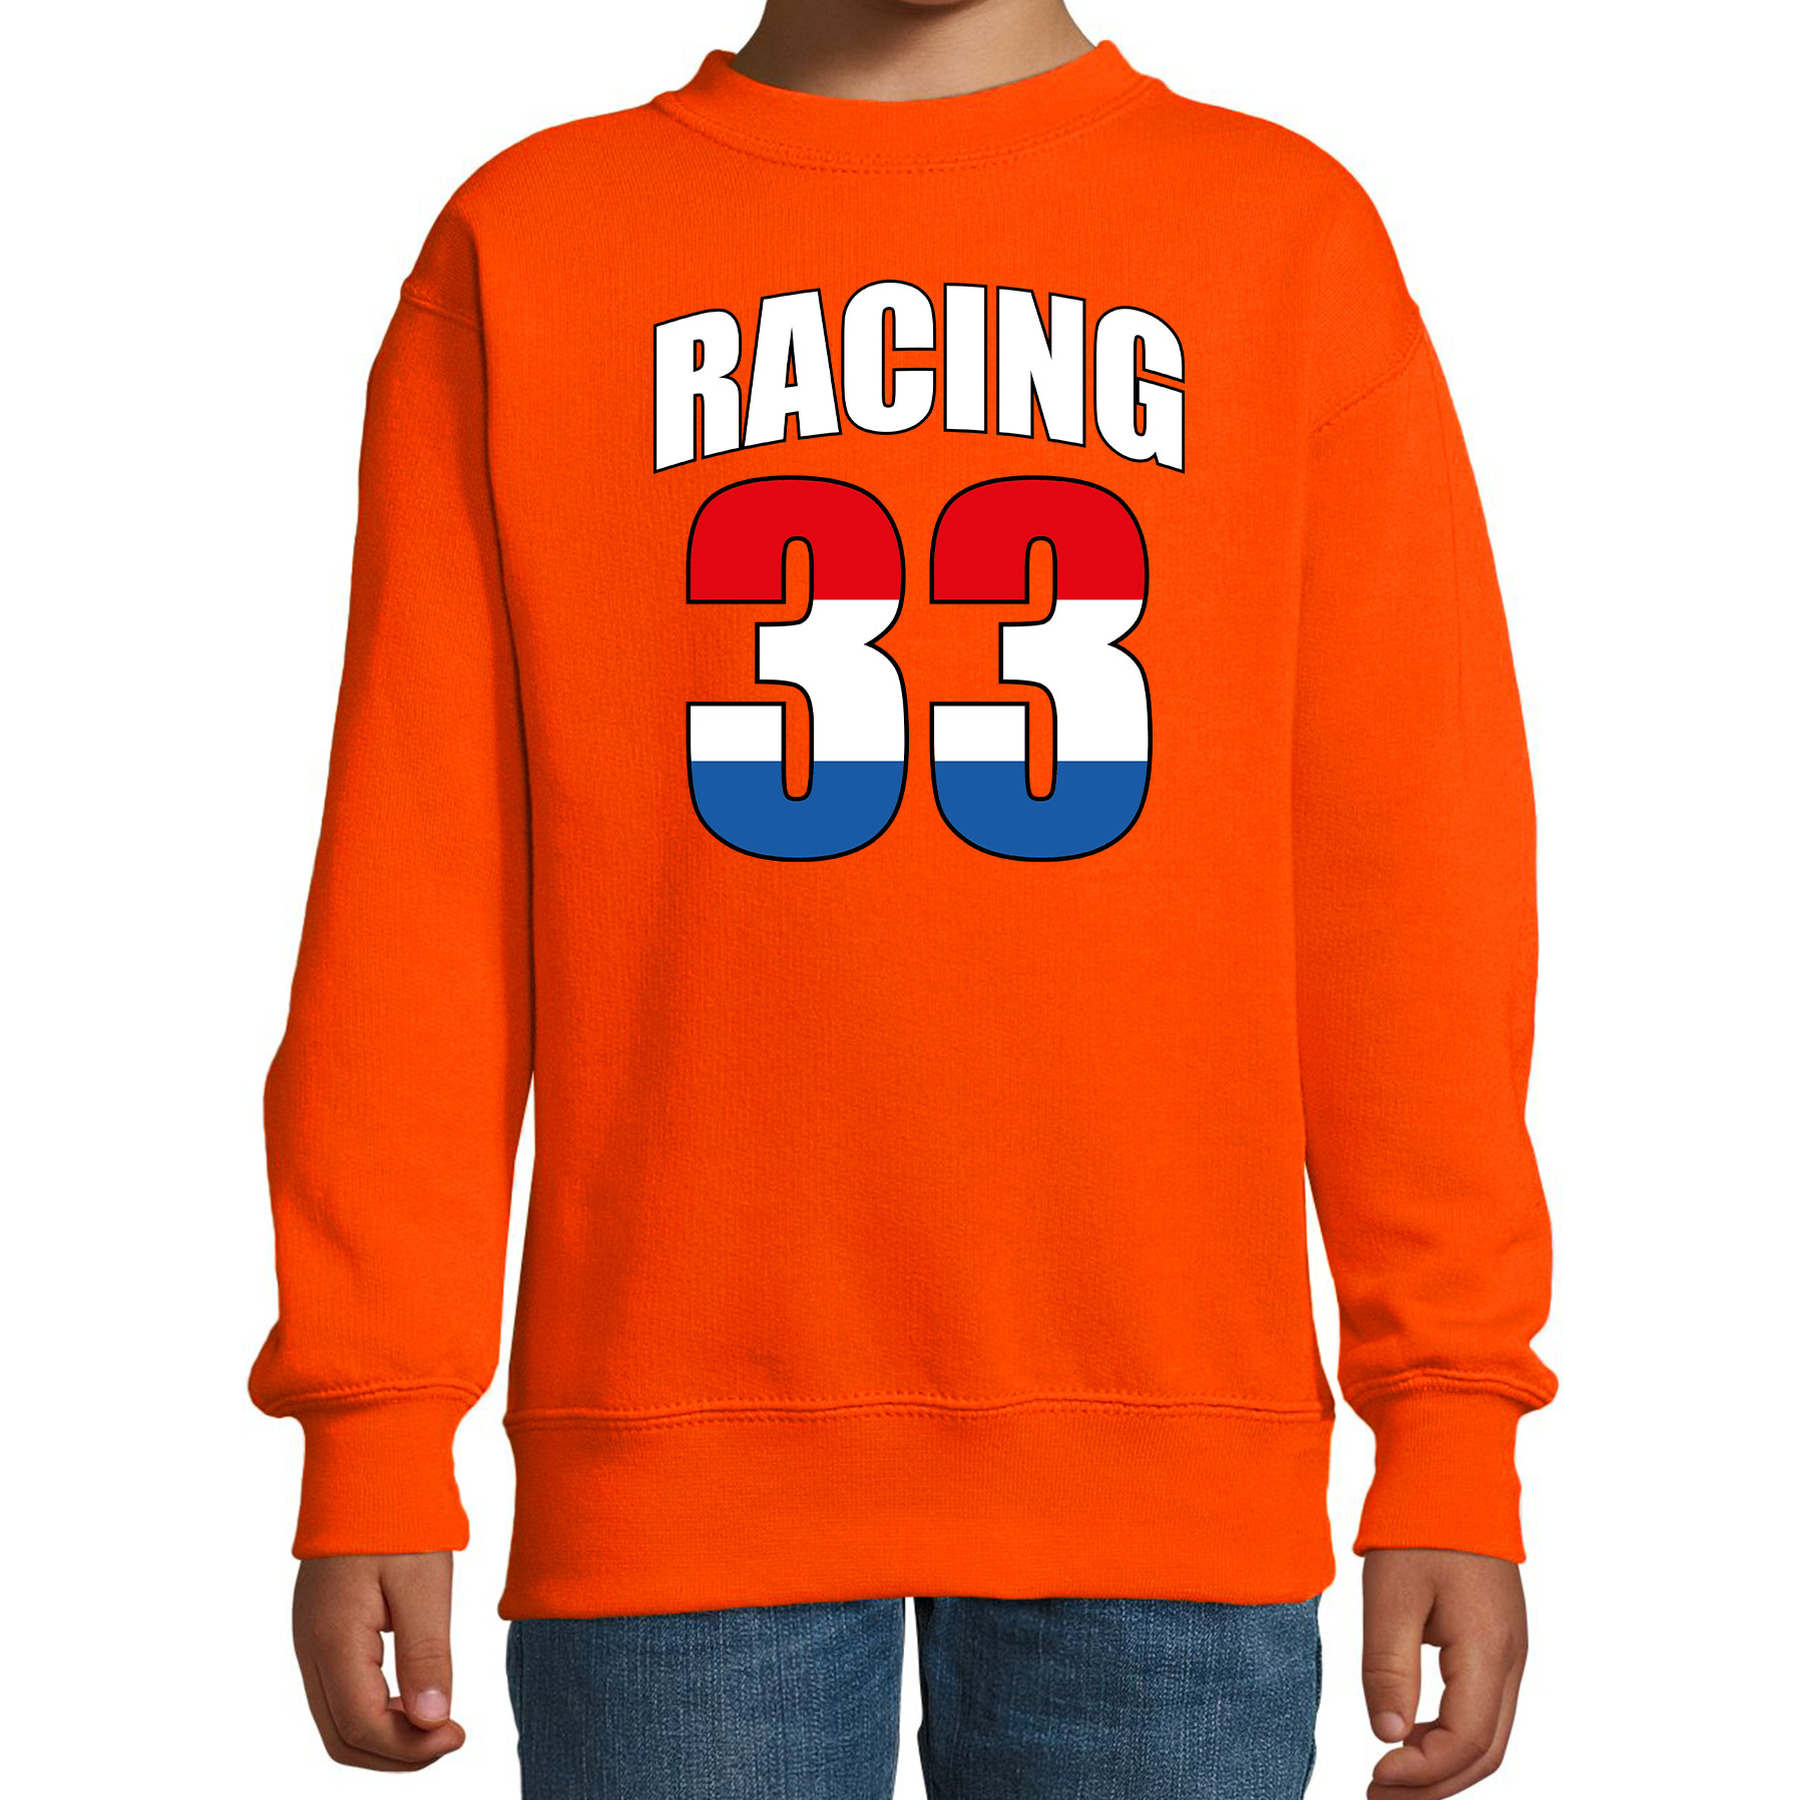 Racing 33 supporter-race fan sweater oranje voor kinderen